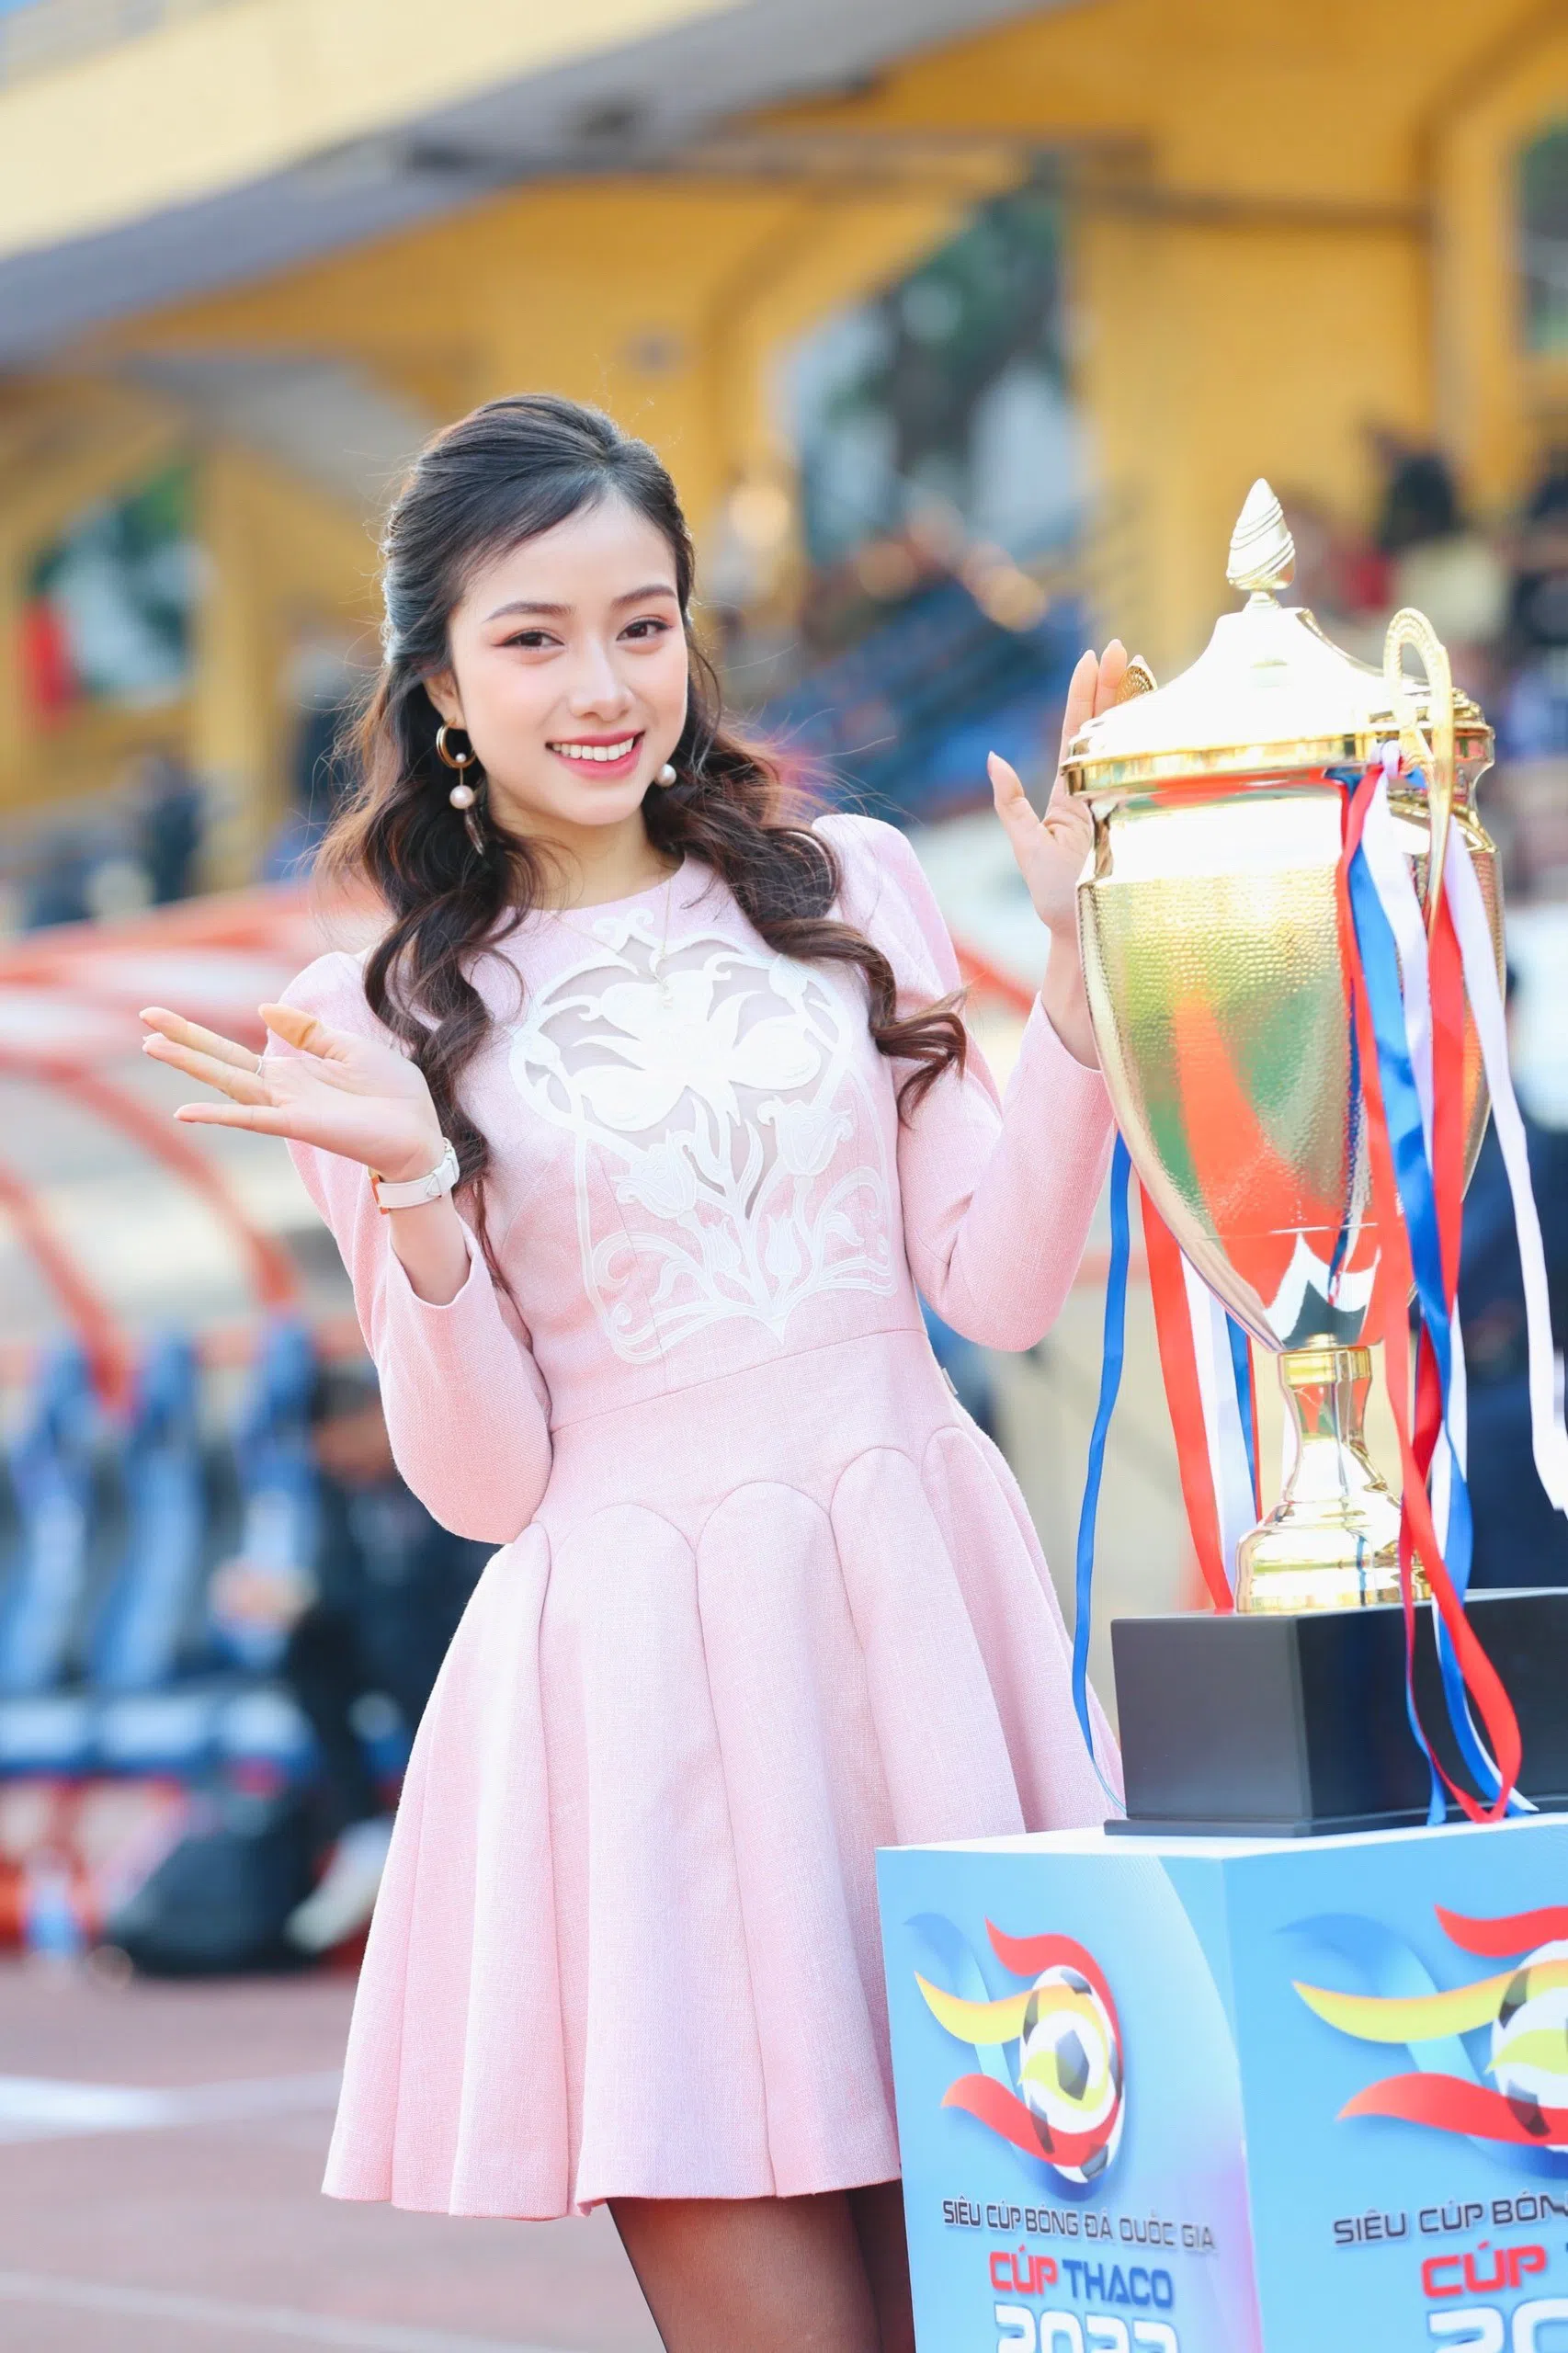 CHÙM ẢNH: Đỗ Mỹ Linh cùng dàn Hoa hậu rạng rỡ trong ngày Hà Nội FC đoạt Siêu Cup Quốc Gia